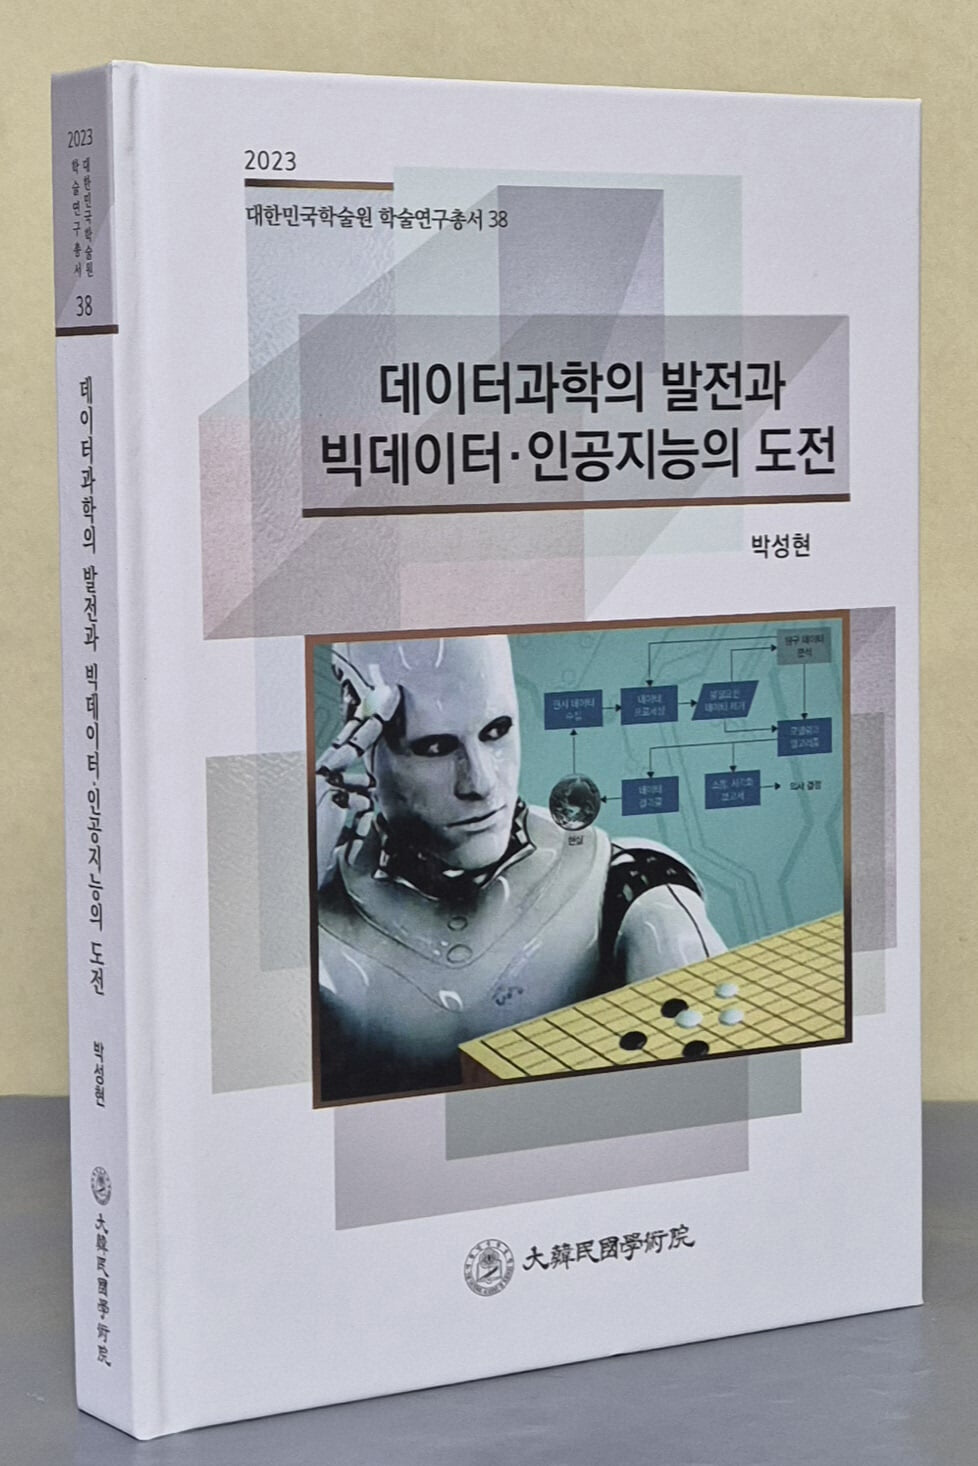 데이터과학의 발전과 빅데이터 · 인공지능의 도전 (2023 대한민국학술원 학술연구총서 38)